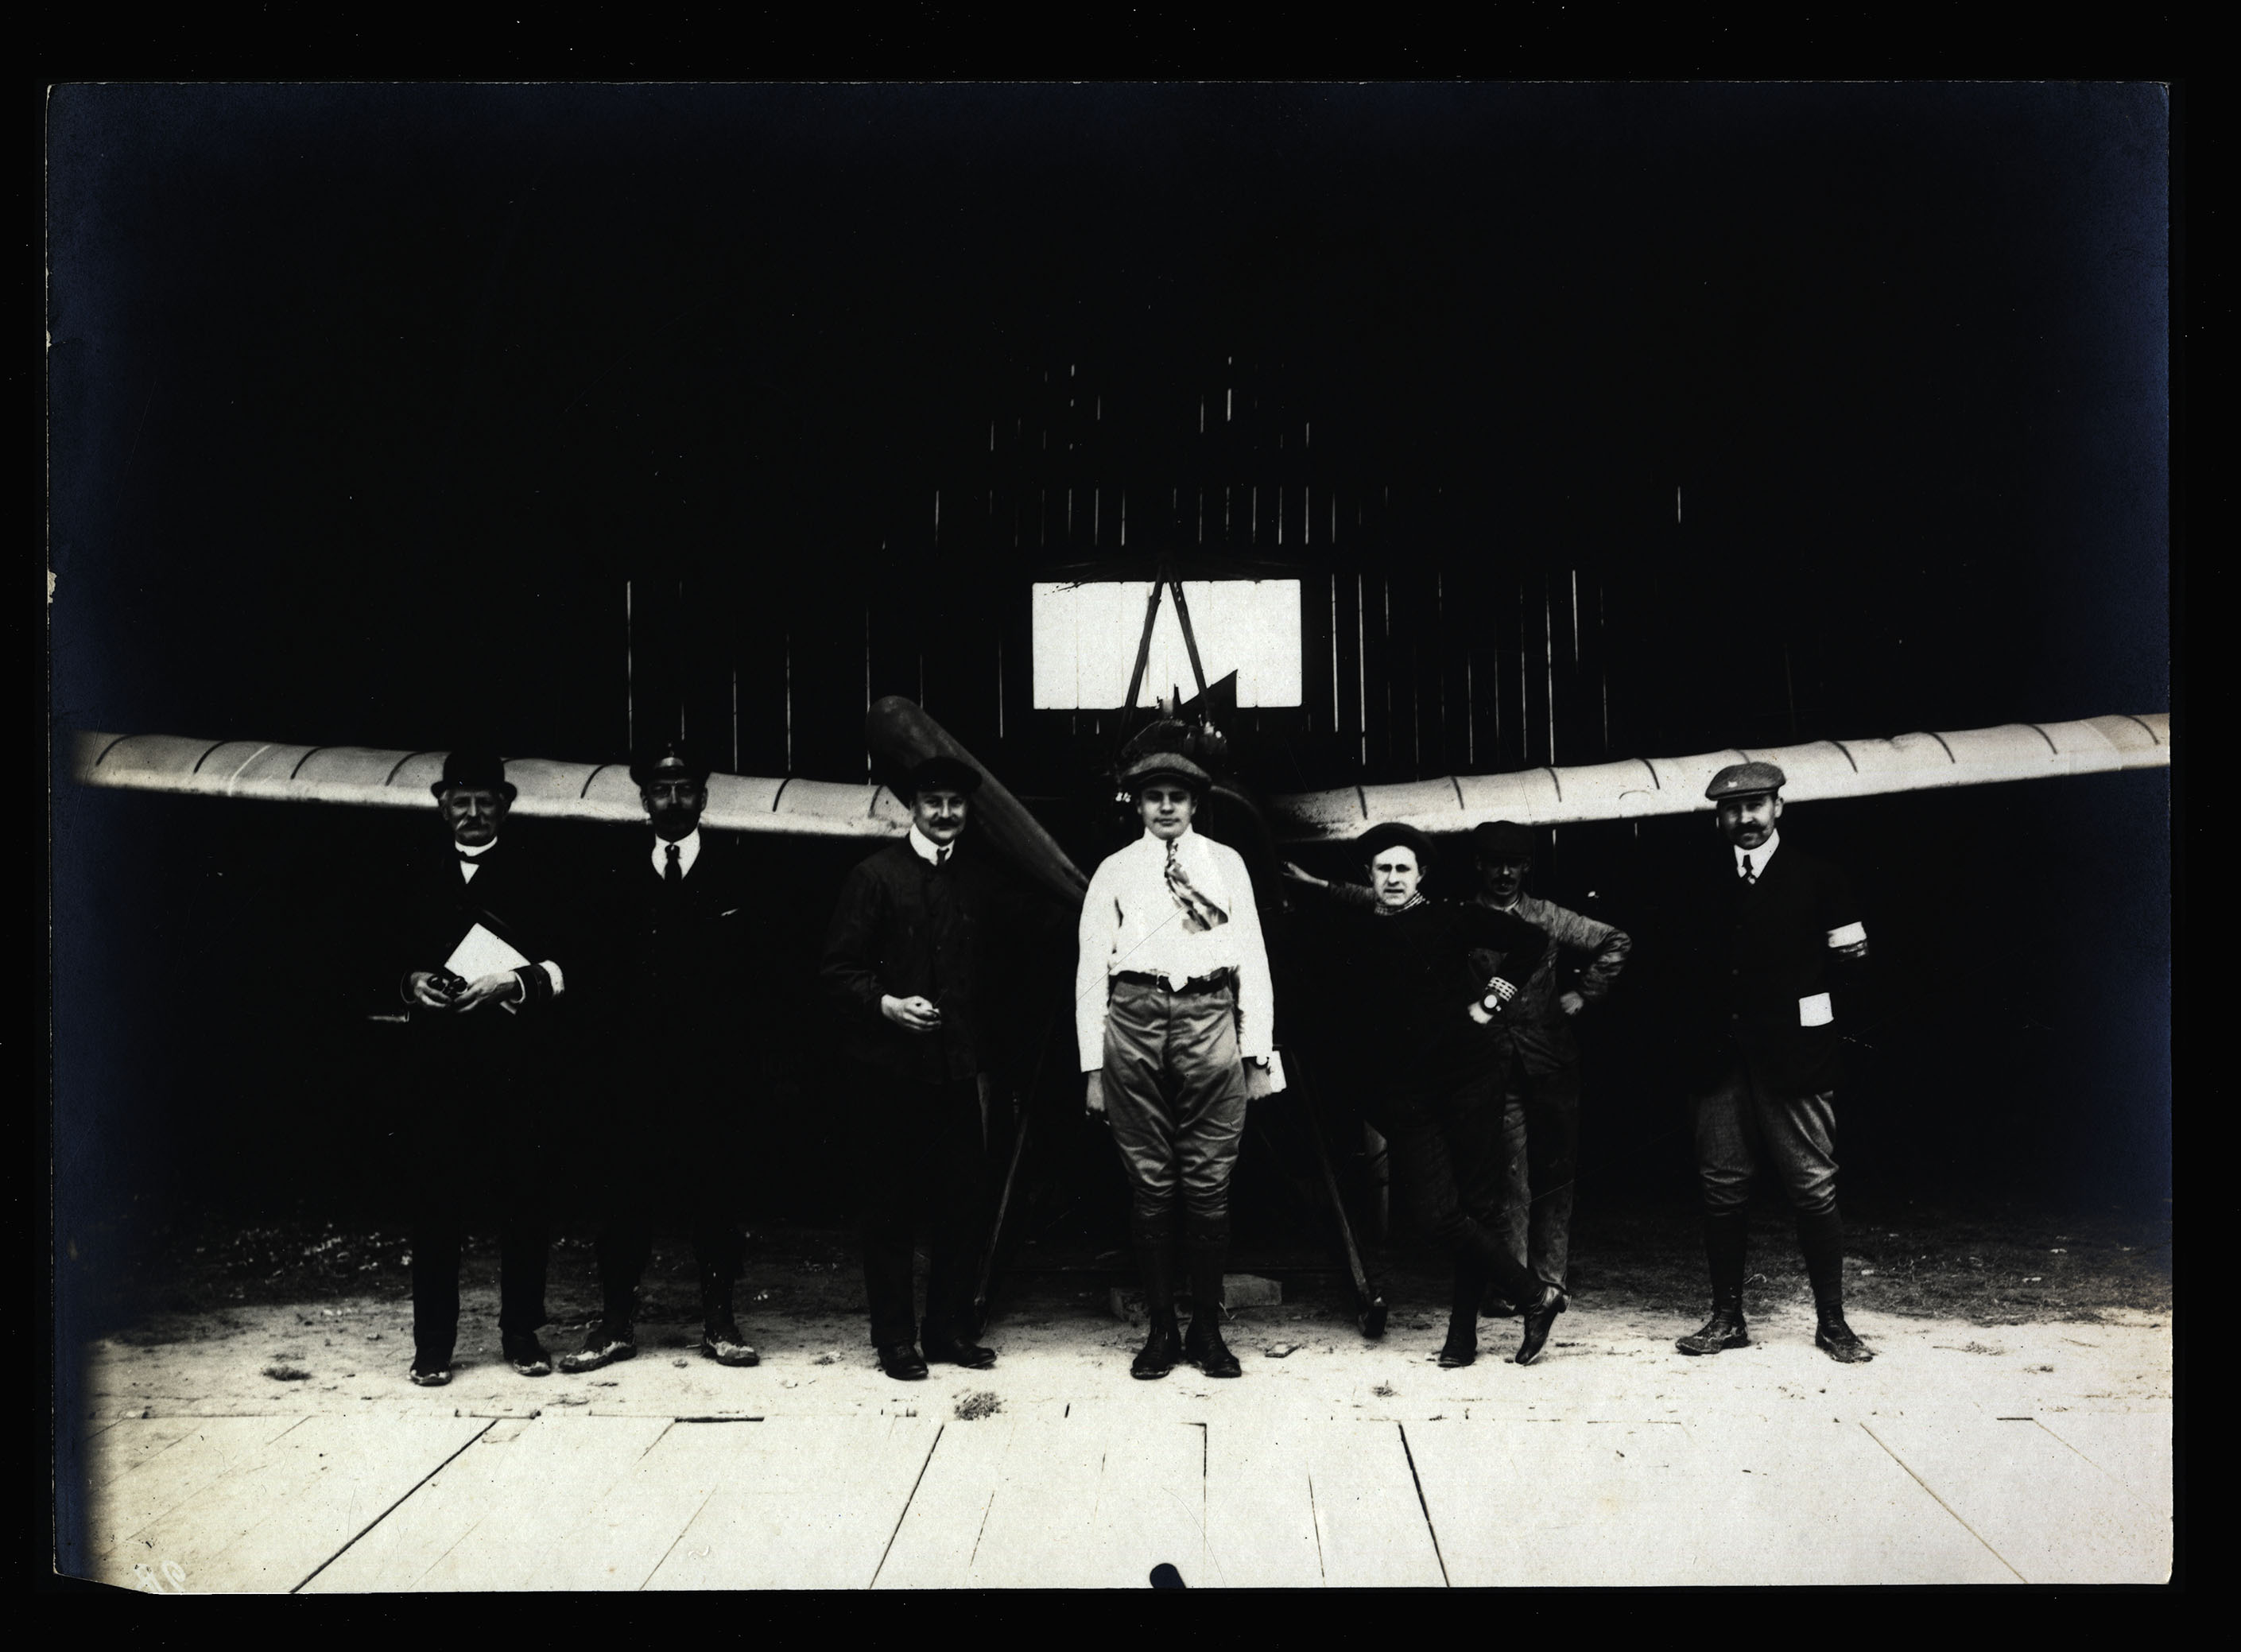 Grande semaine d’aviation 1909, Bétheny. Un pilote, son équipe et des juges à l’entrée d’un hangar devant un aéroplane "Antoinette". BM Reims, LX A 18.